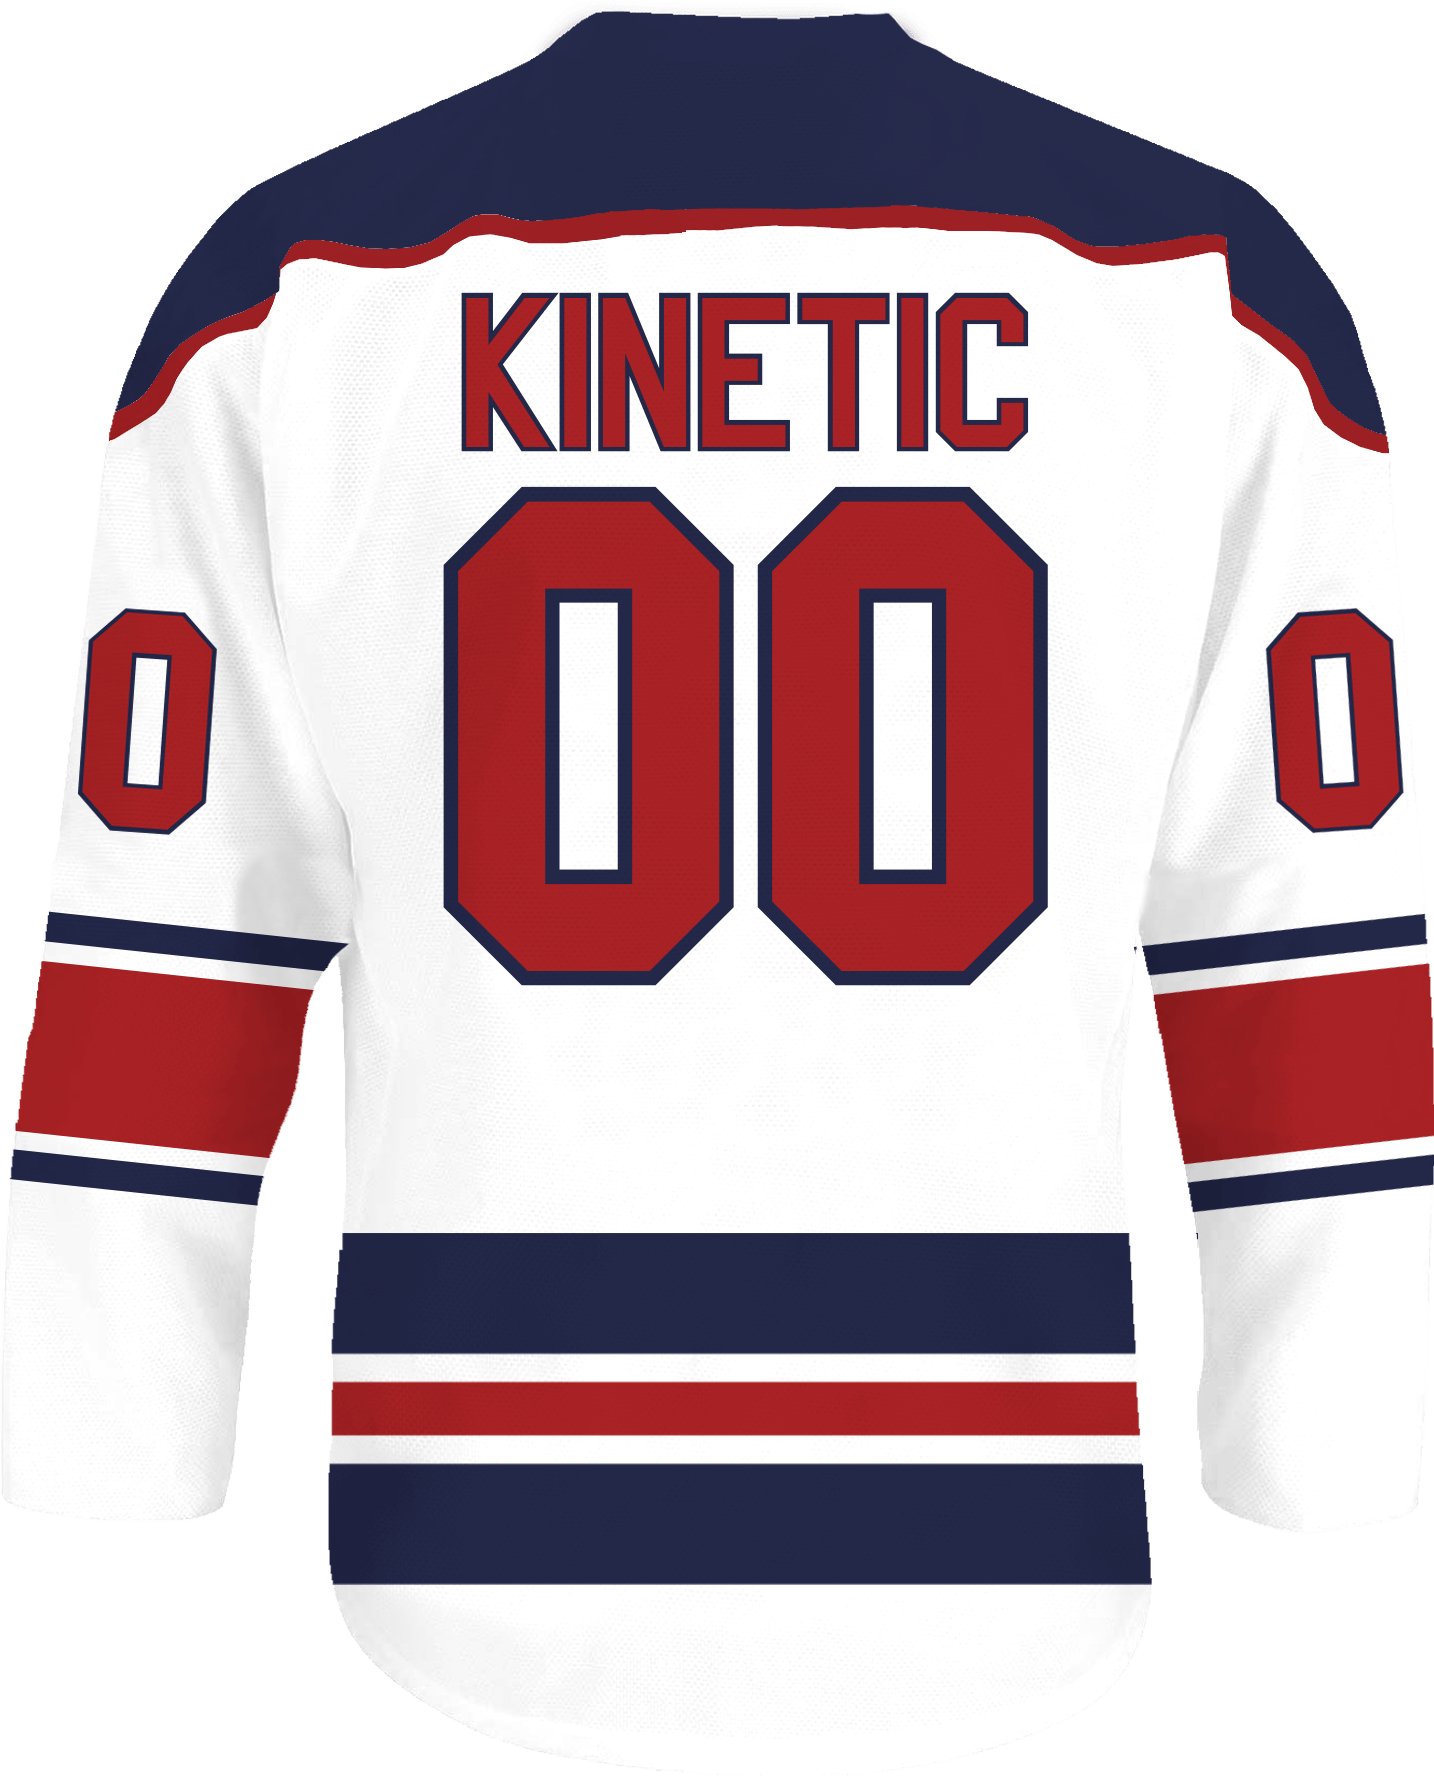 Kappa Sigma - Captain Hockey Jersey - Kinetic Society